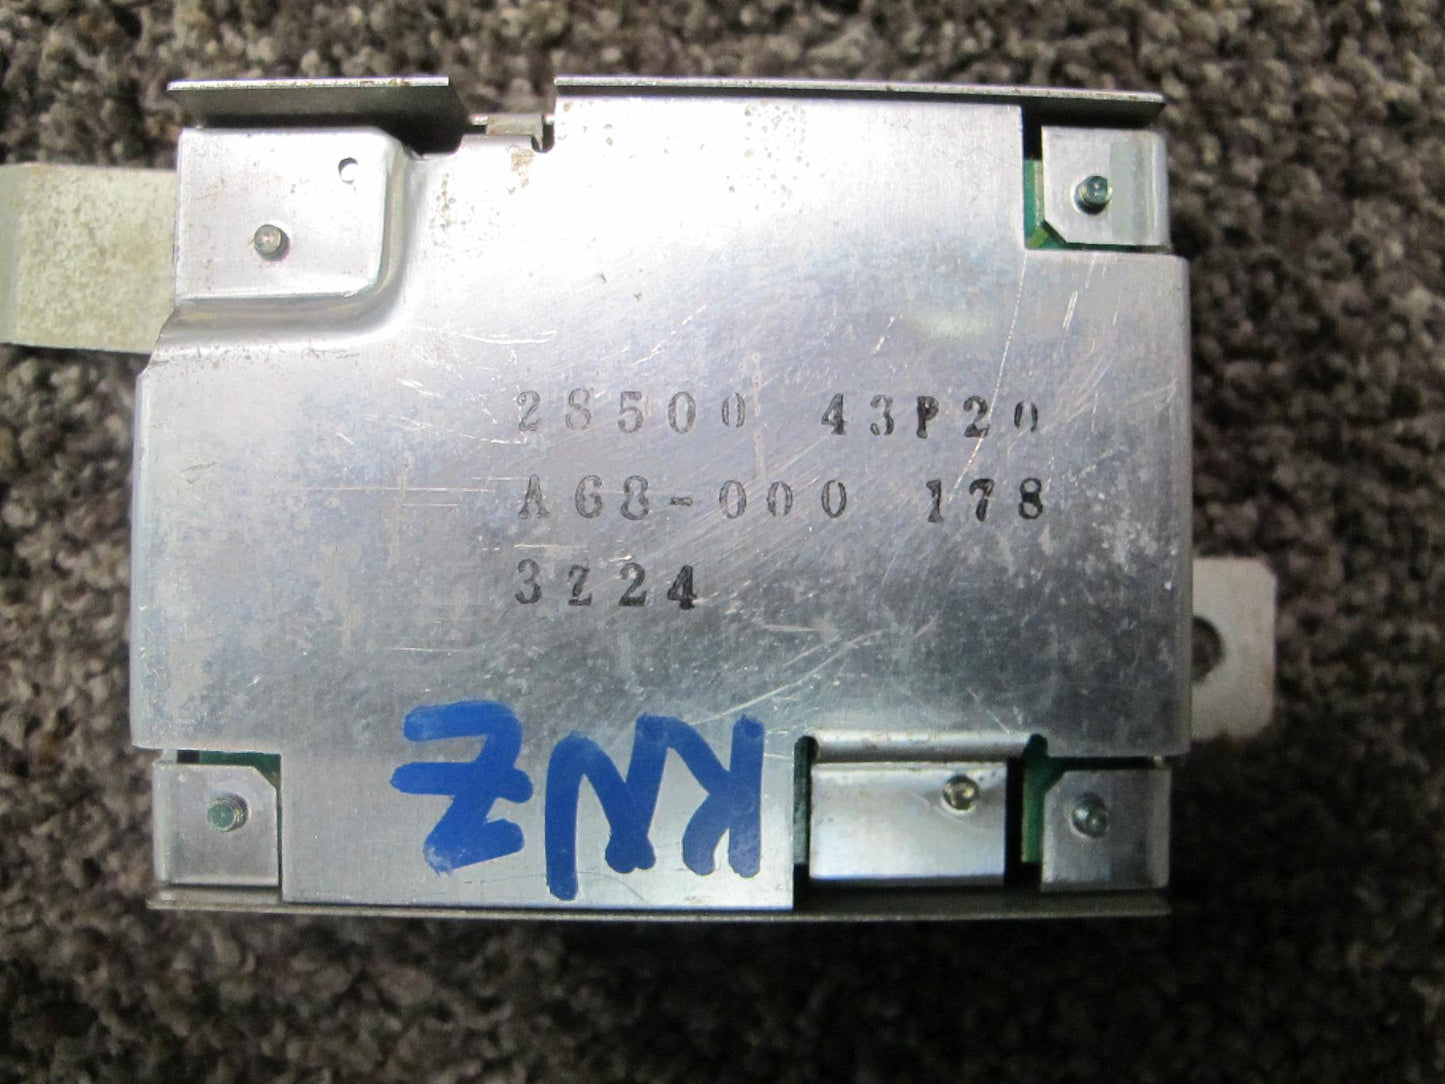 95-96 NISSAN Z32 300ZX POWER STEERING CONTROL MODULE 28500-43P20 OEM